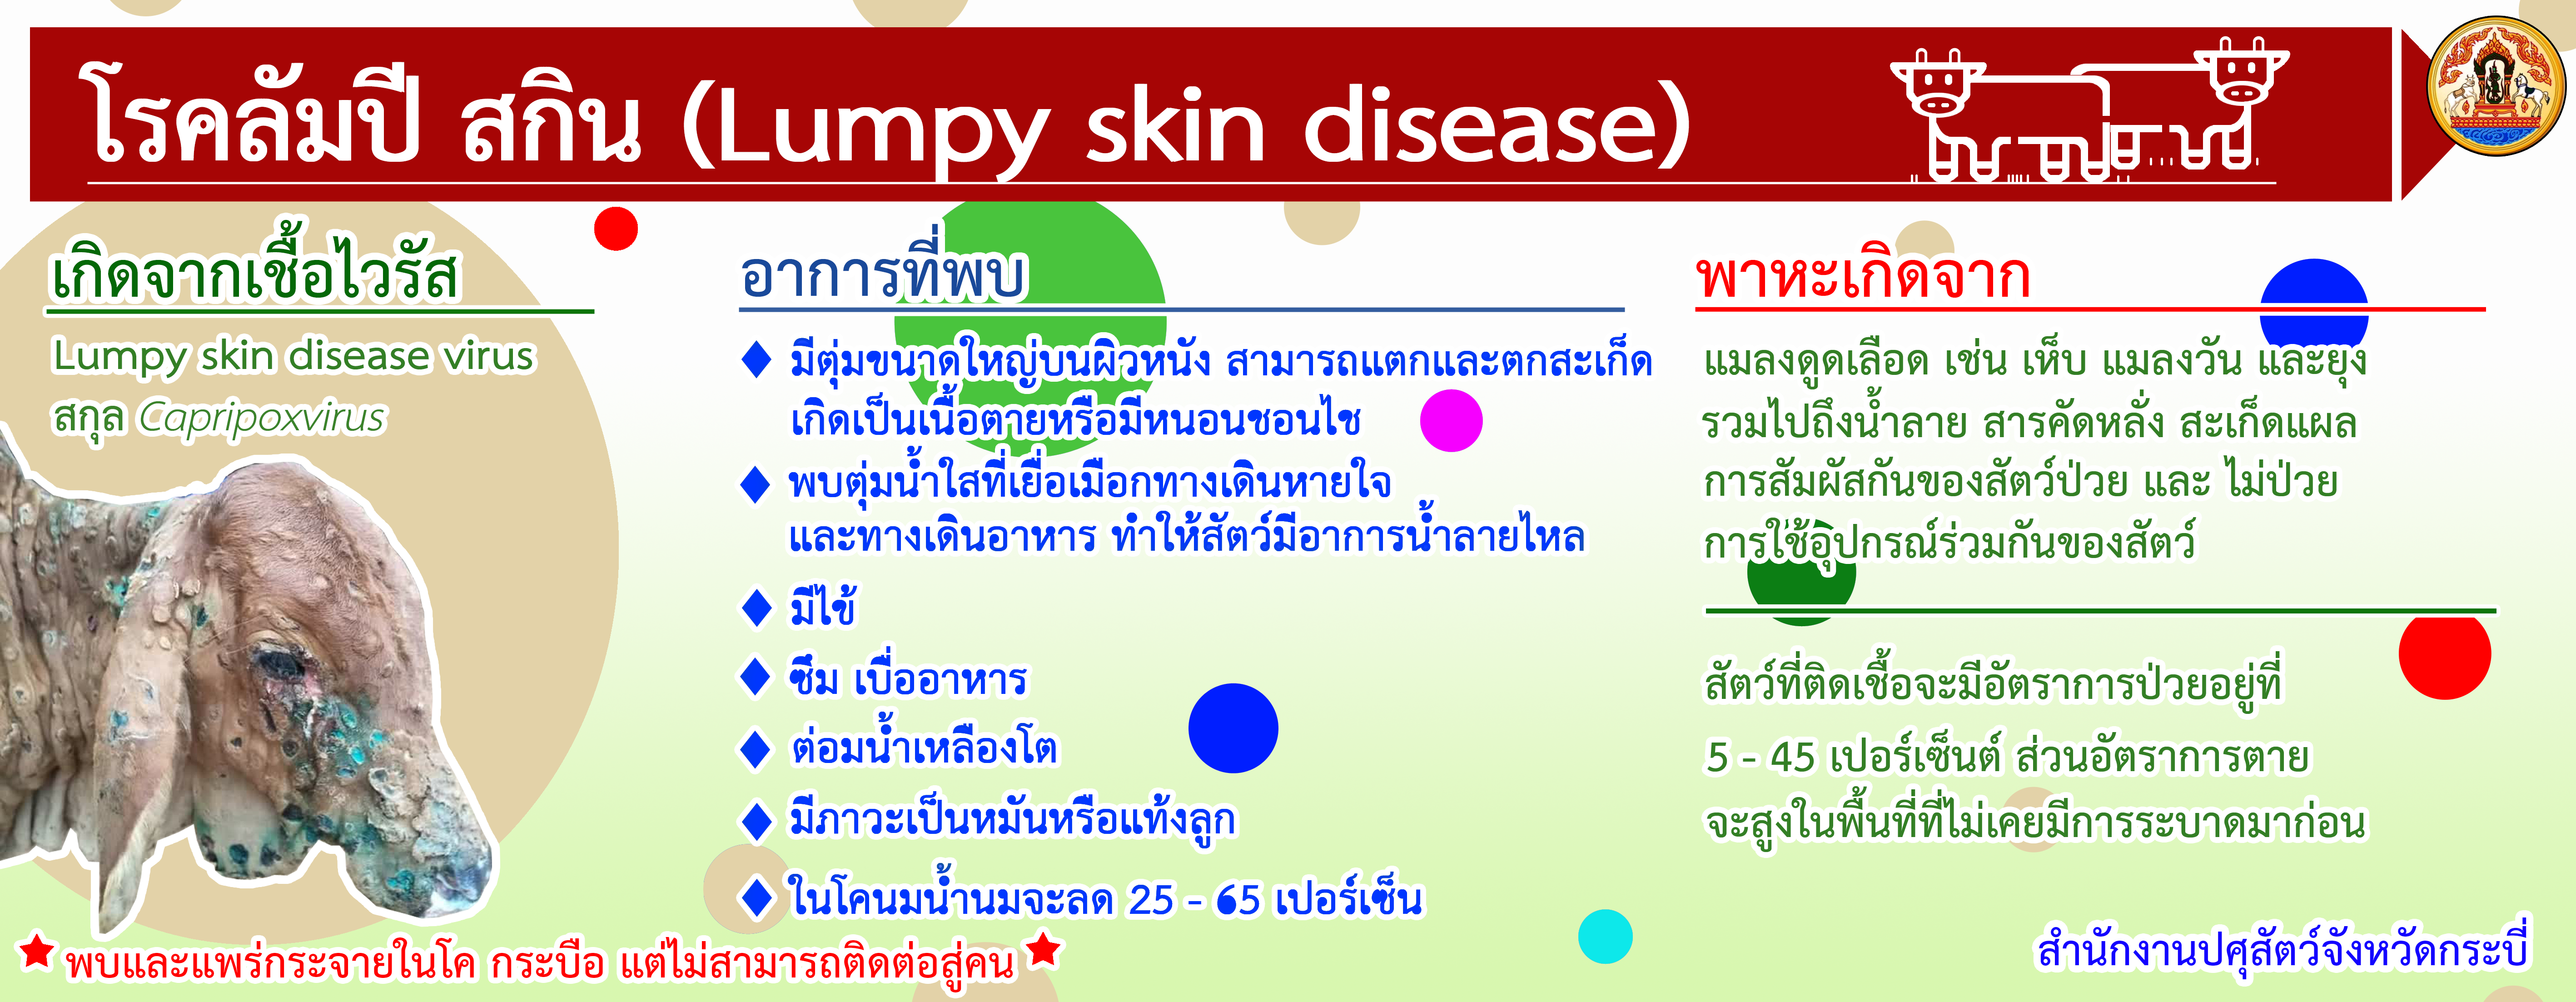 Lumpy skin